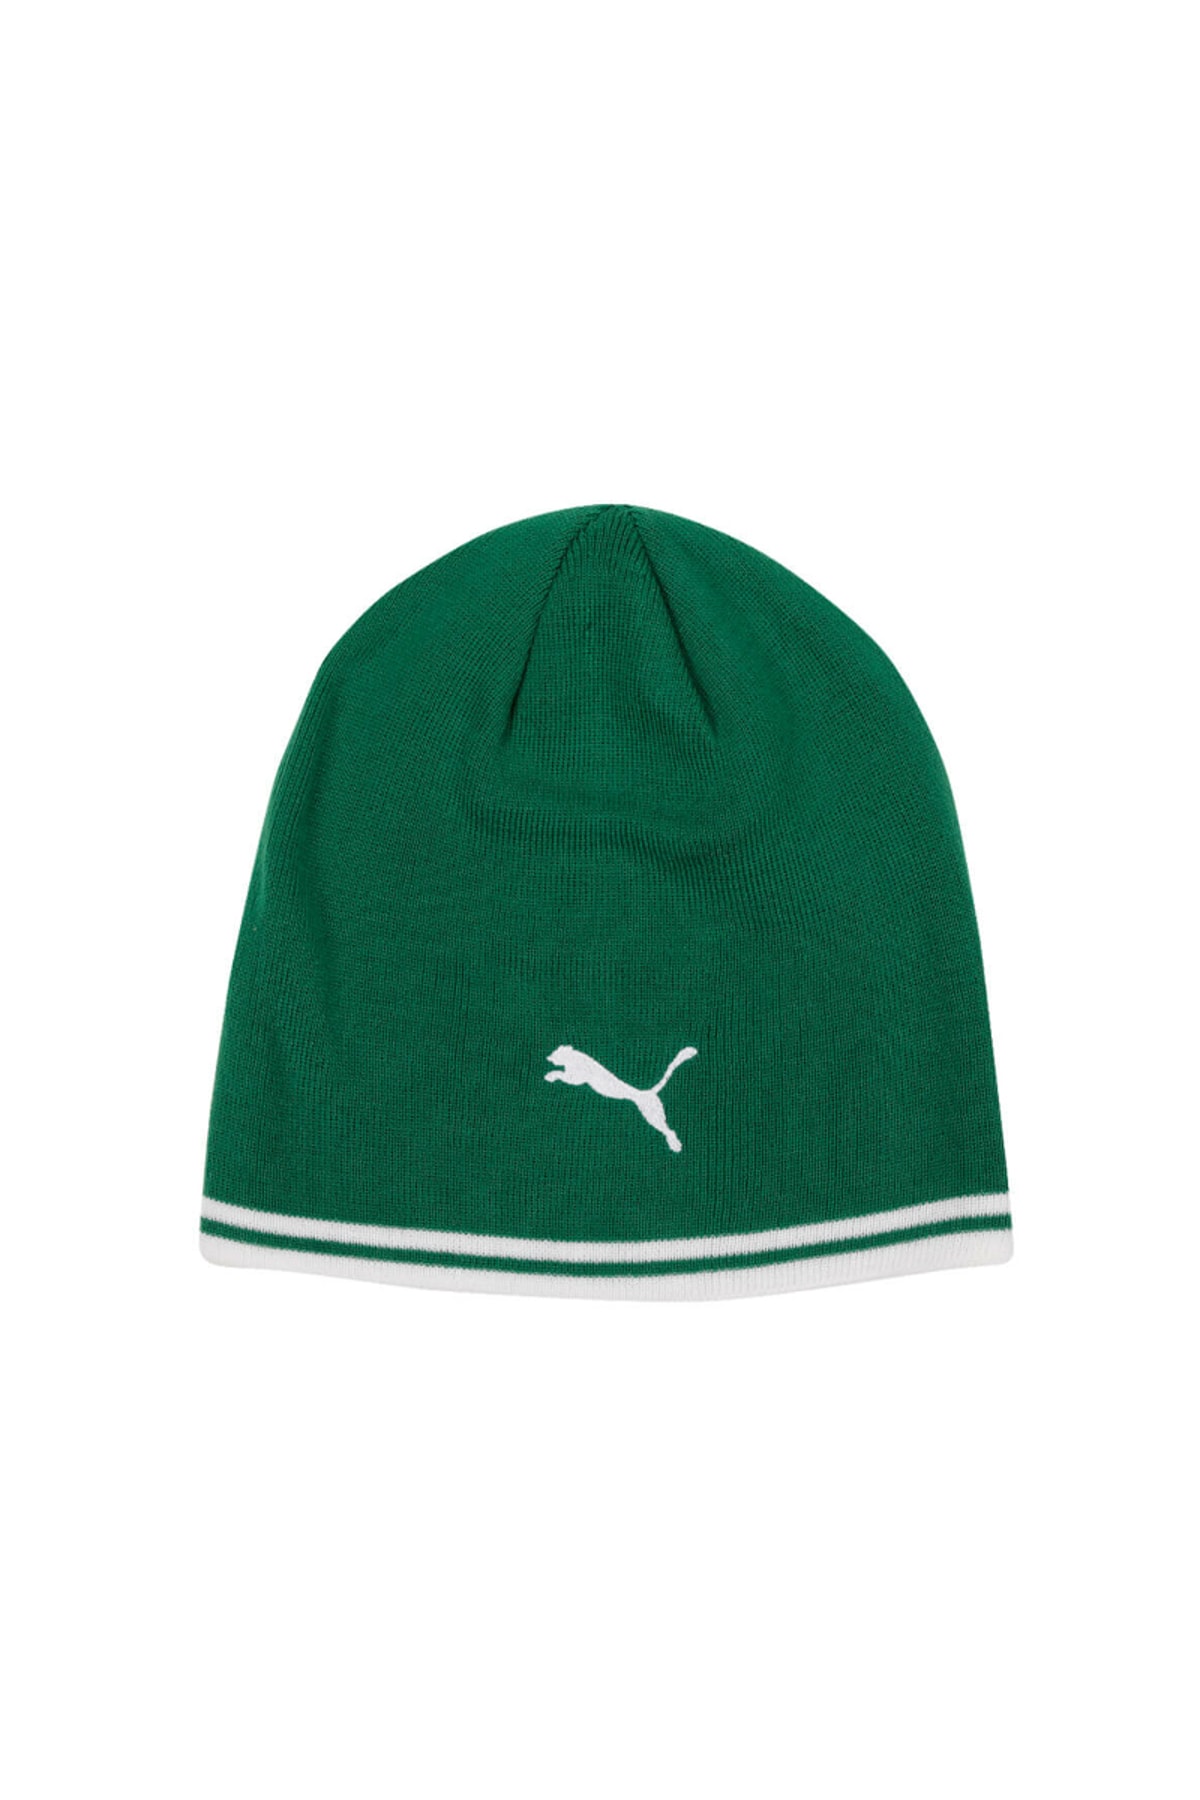 کلاه زمستانی مردانه سبز برند puma 2121005